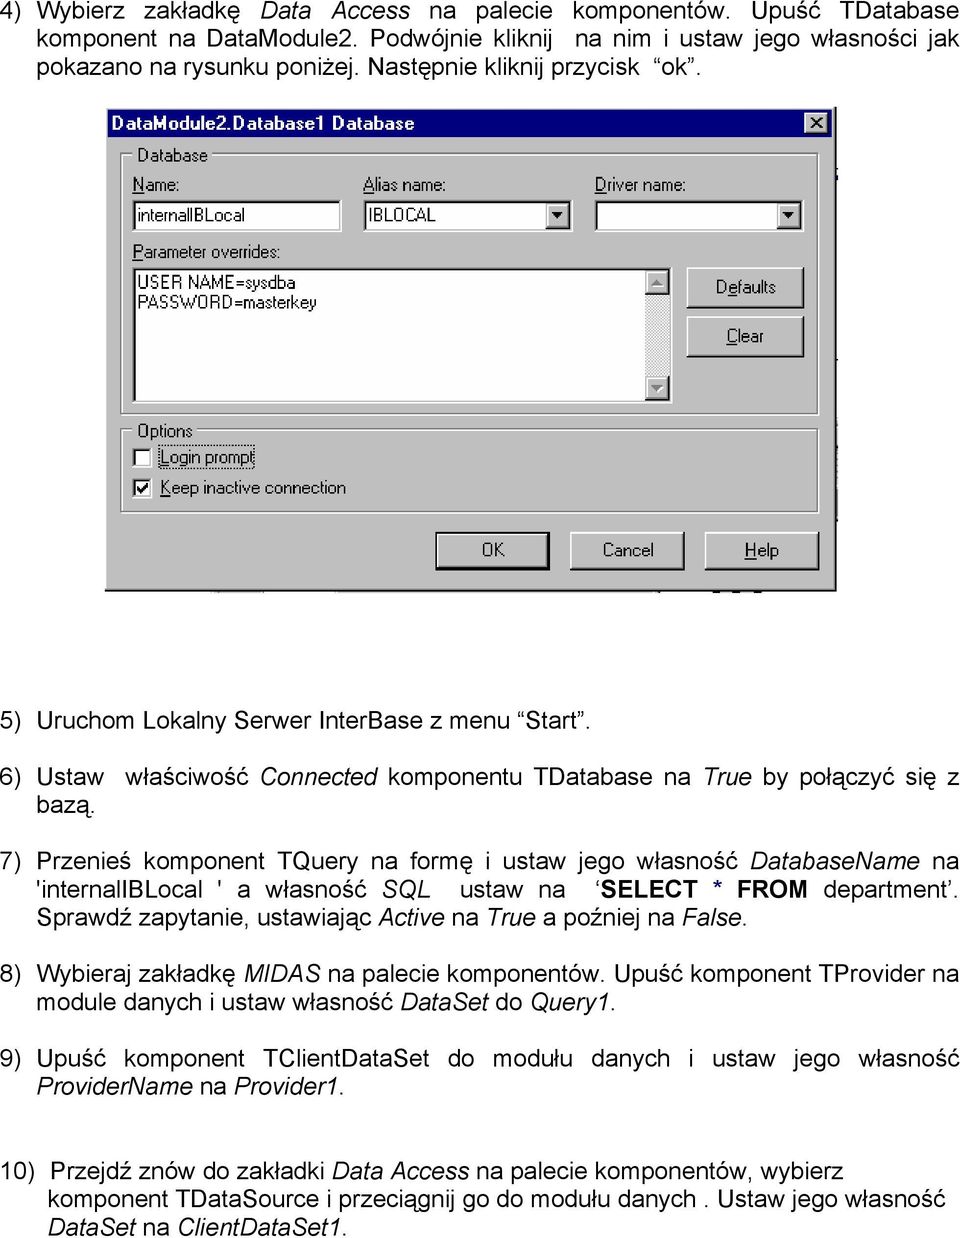 7) Przenieś komponent TQuery na formę i ustaw jego własność DatabaseName na 'internaliblocal ' a własność SQL ustaw na SELECT * FROM department.